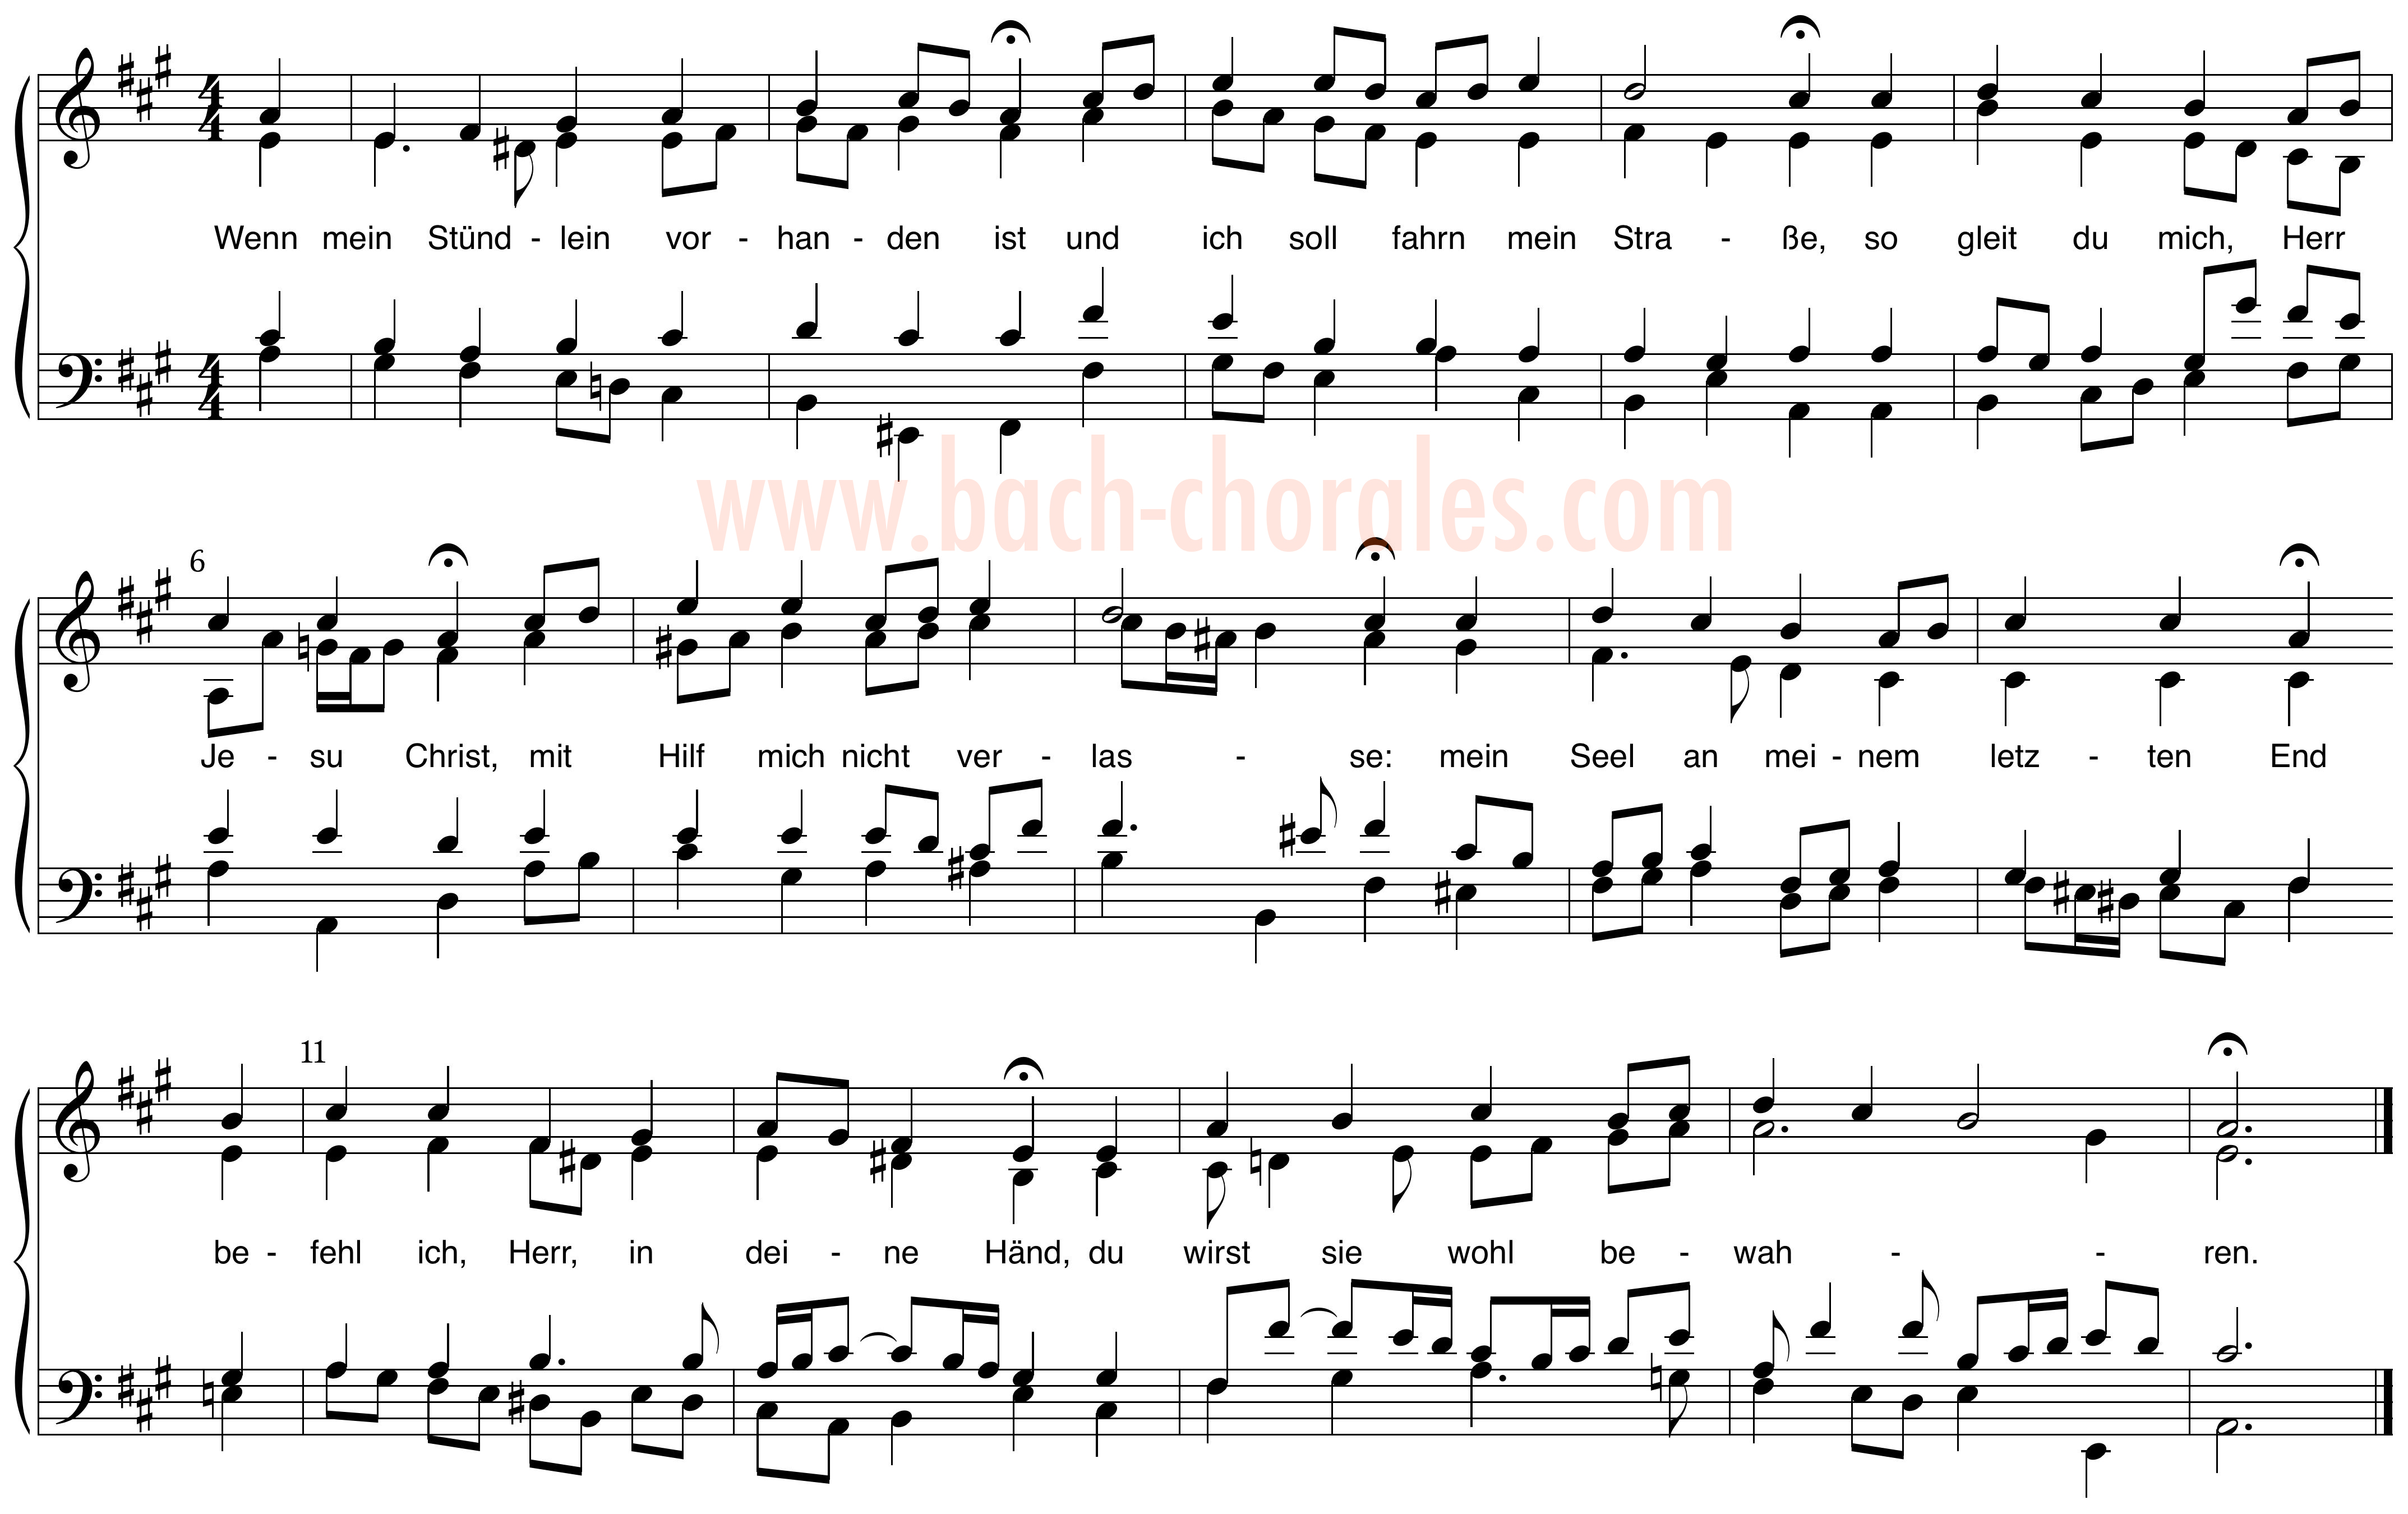 notenbeeld BWV 429 op https://www.bach-chorales.com/